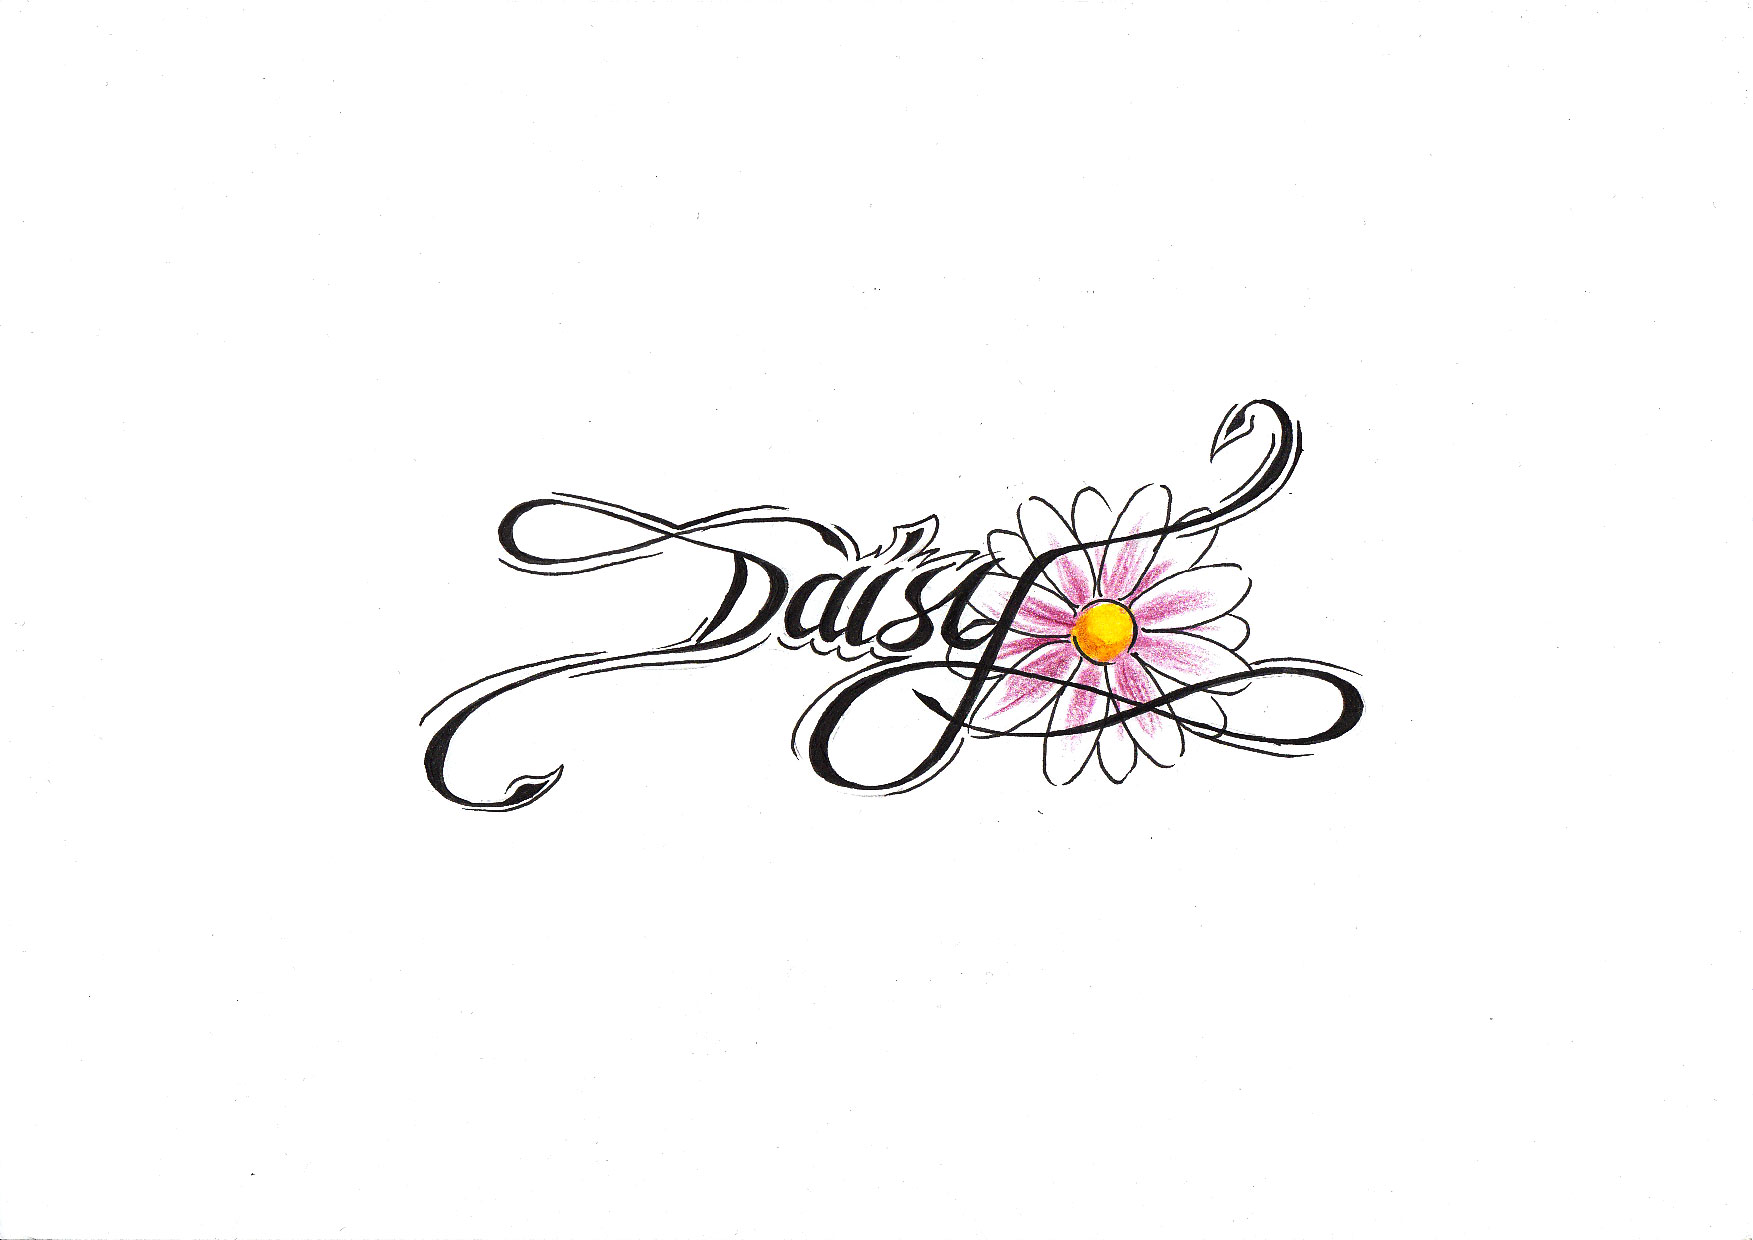 Daisy+tattoo+ideas